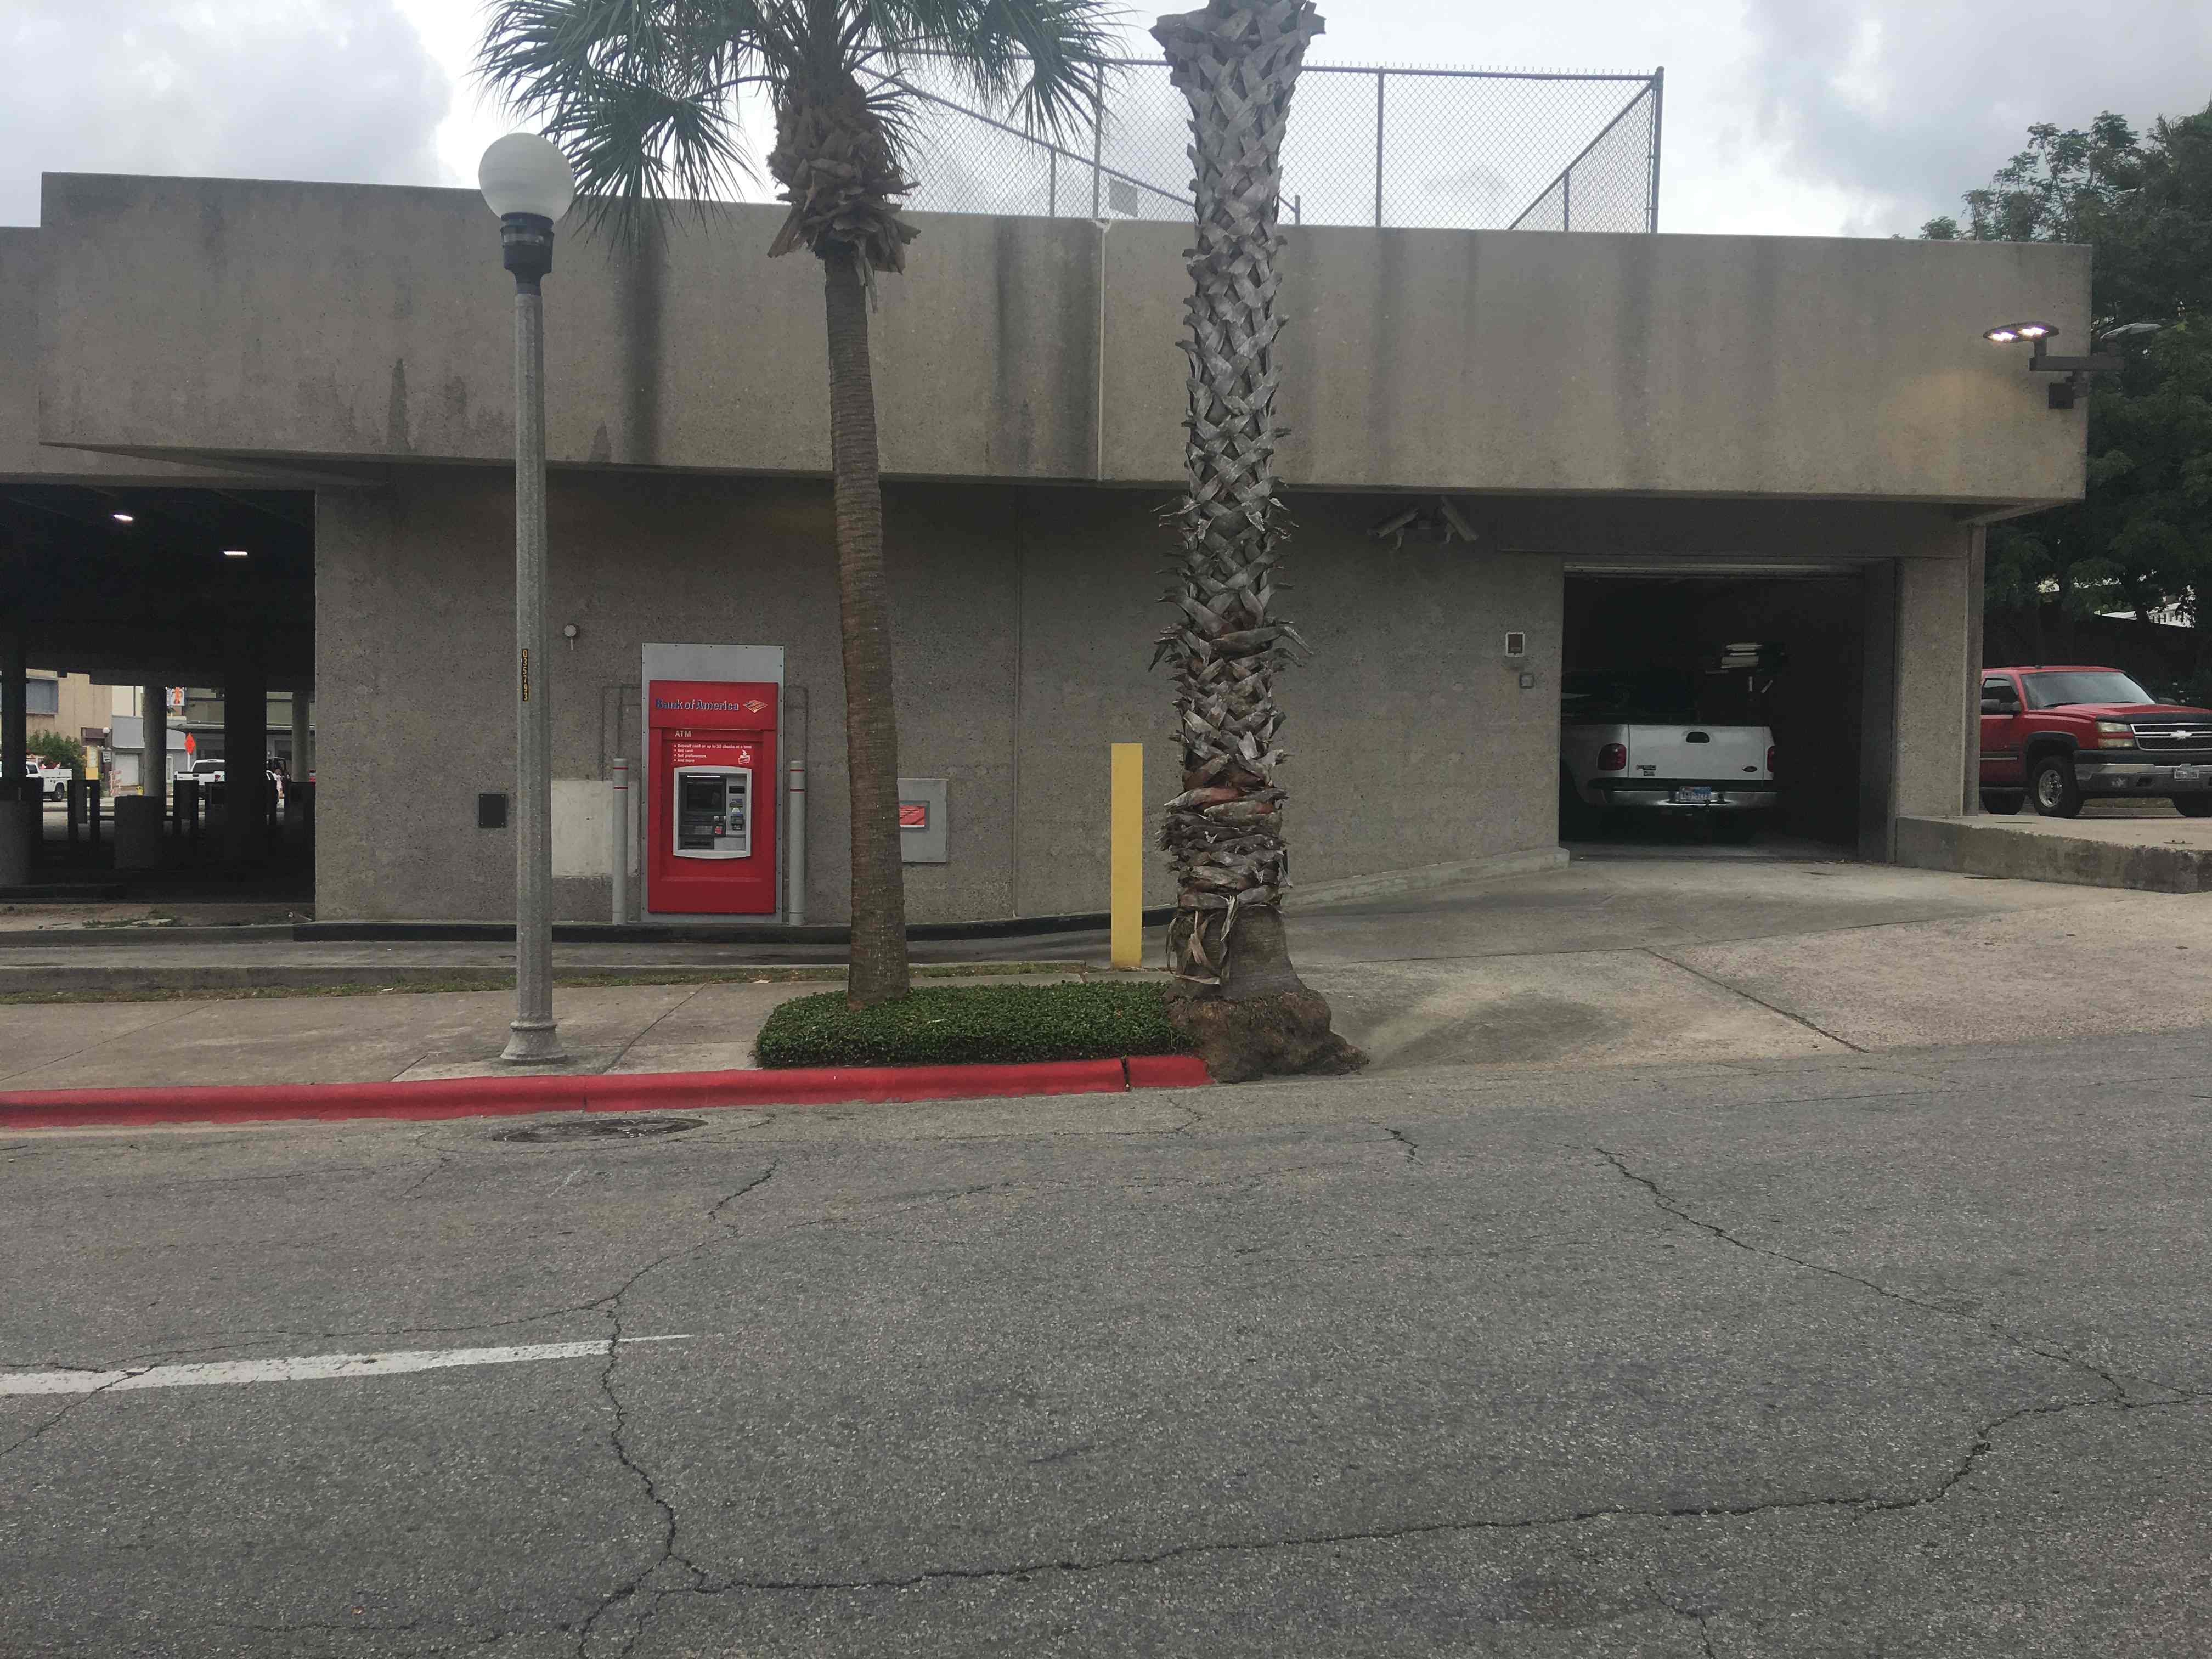 Chuyện hy hữu: Một người đàn ông tại Mỹ bị mắc kẹt trong máy ATM